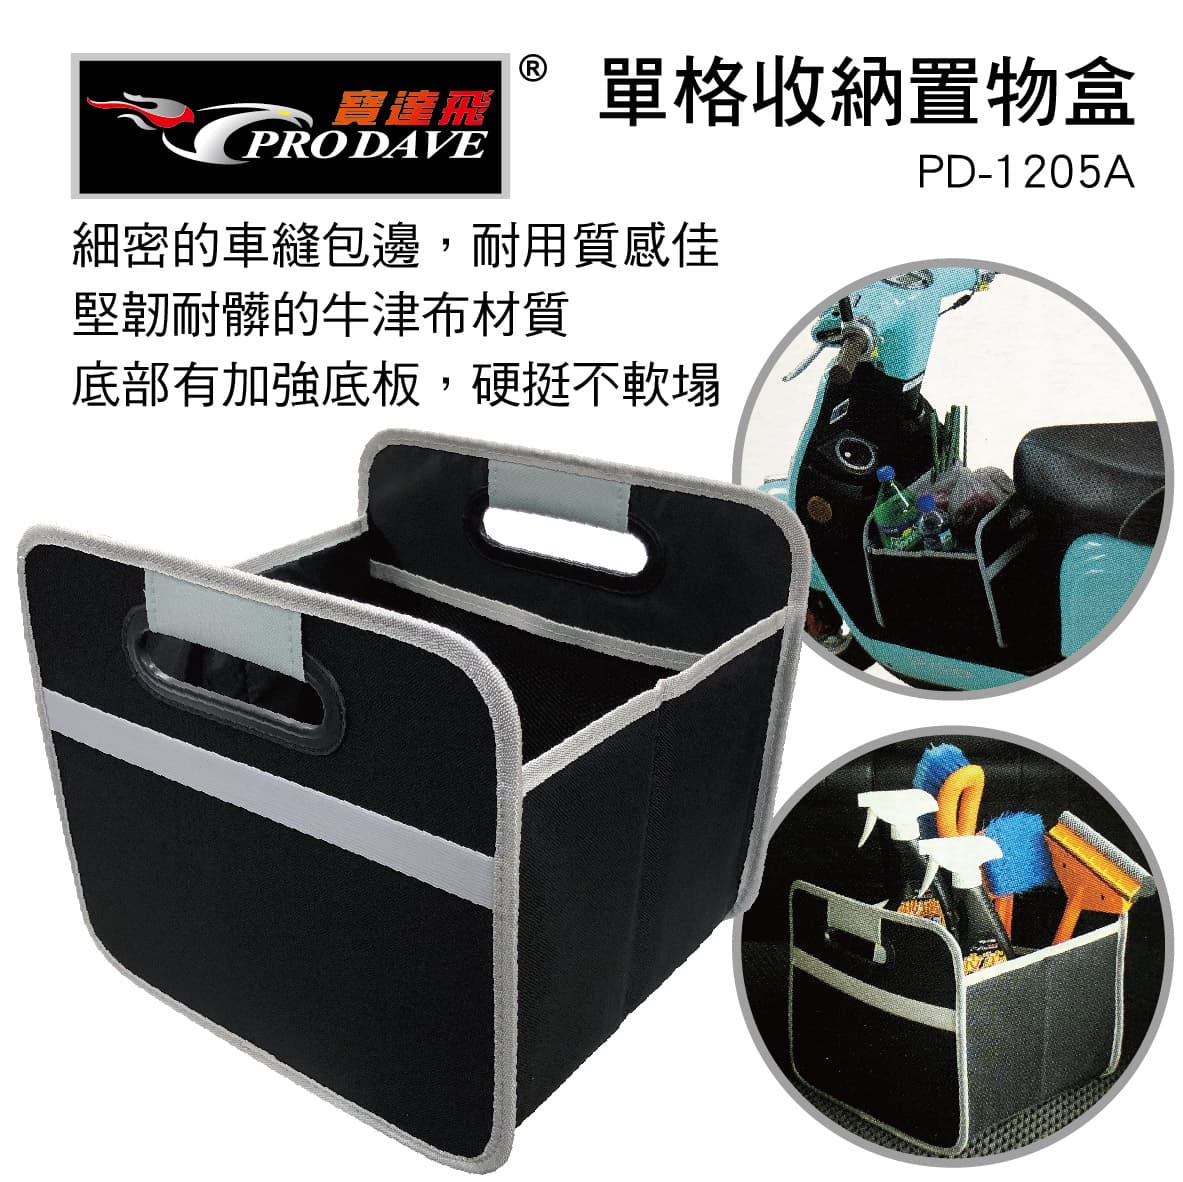 真便宜 PRODAVE寶達飛 PD-1205A 單格收納置物盒